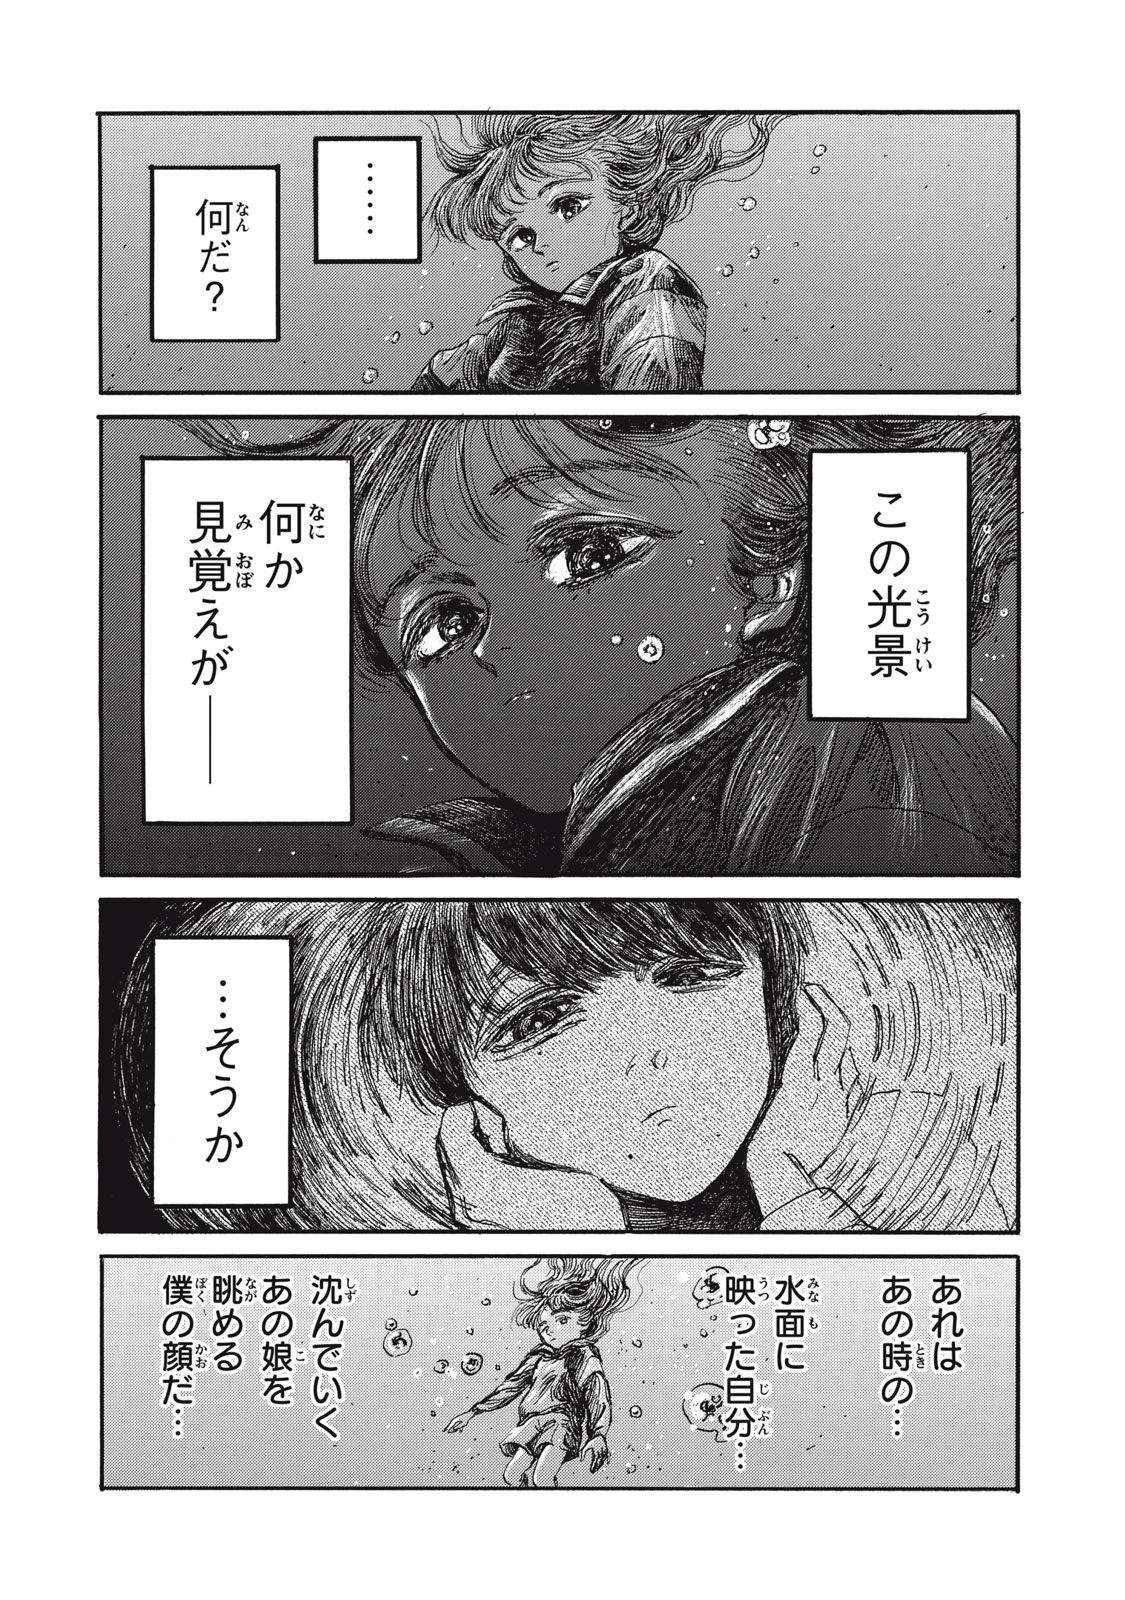 Watashi no Hara no Naka no Bakemono - Chapter 29 - Page 6